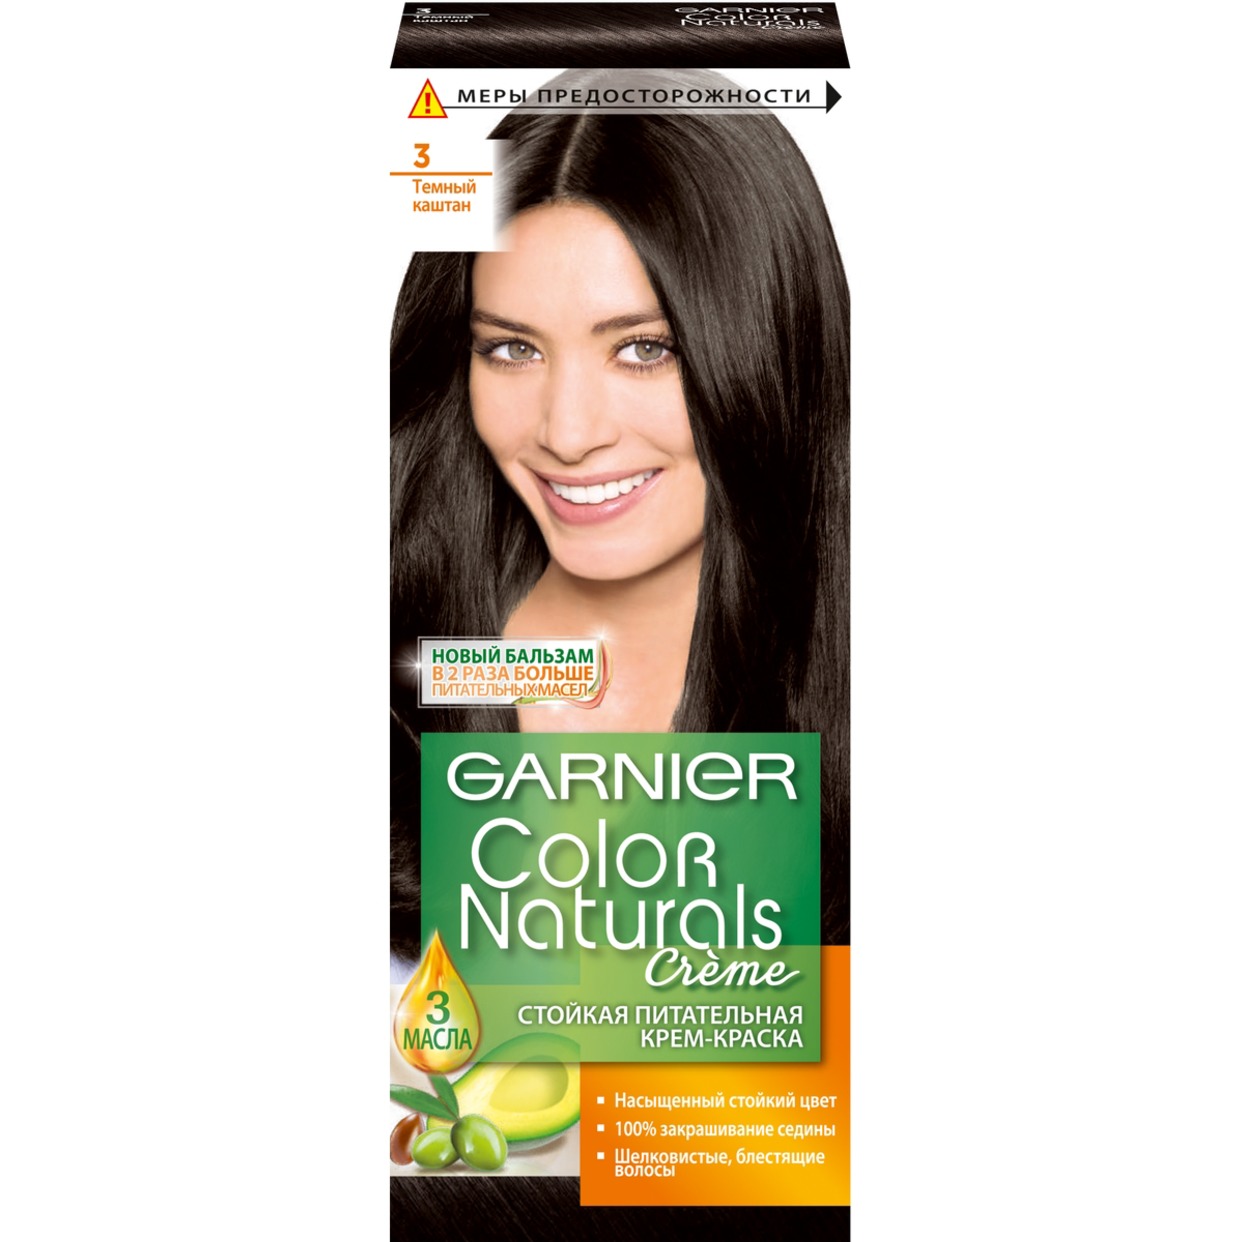 Краска для волос Garnier Color Naturals 3 Темный каштан по акции в Пятерочке